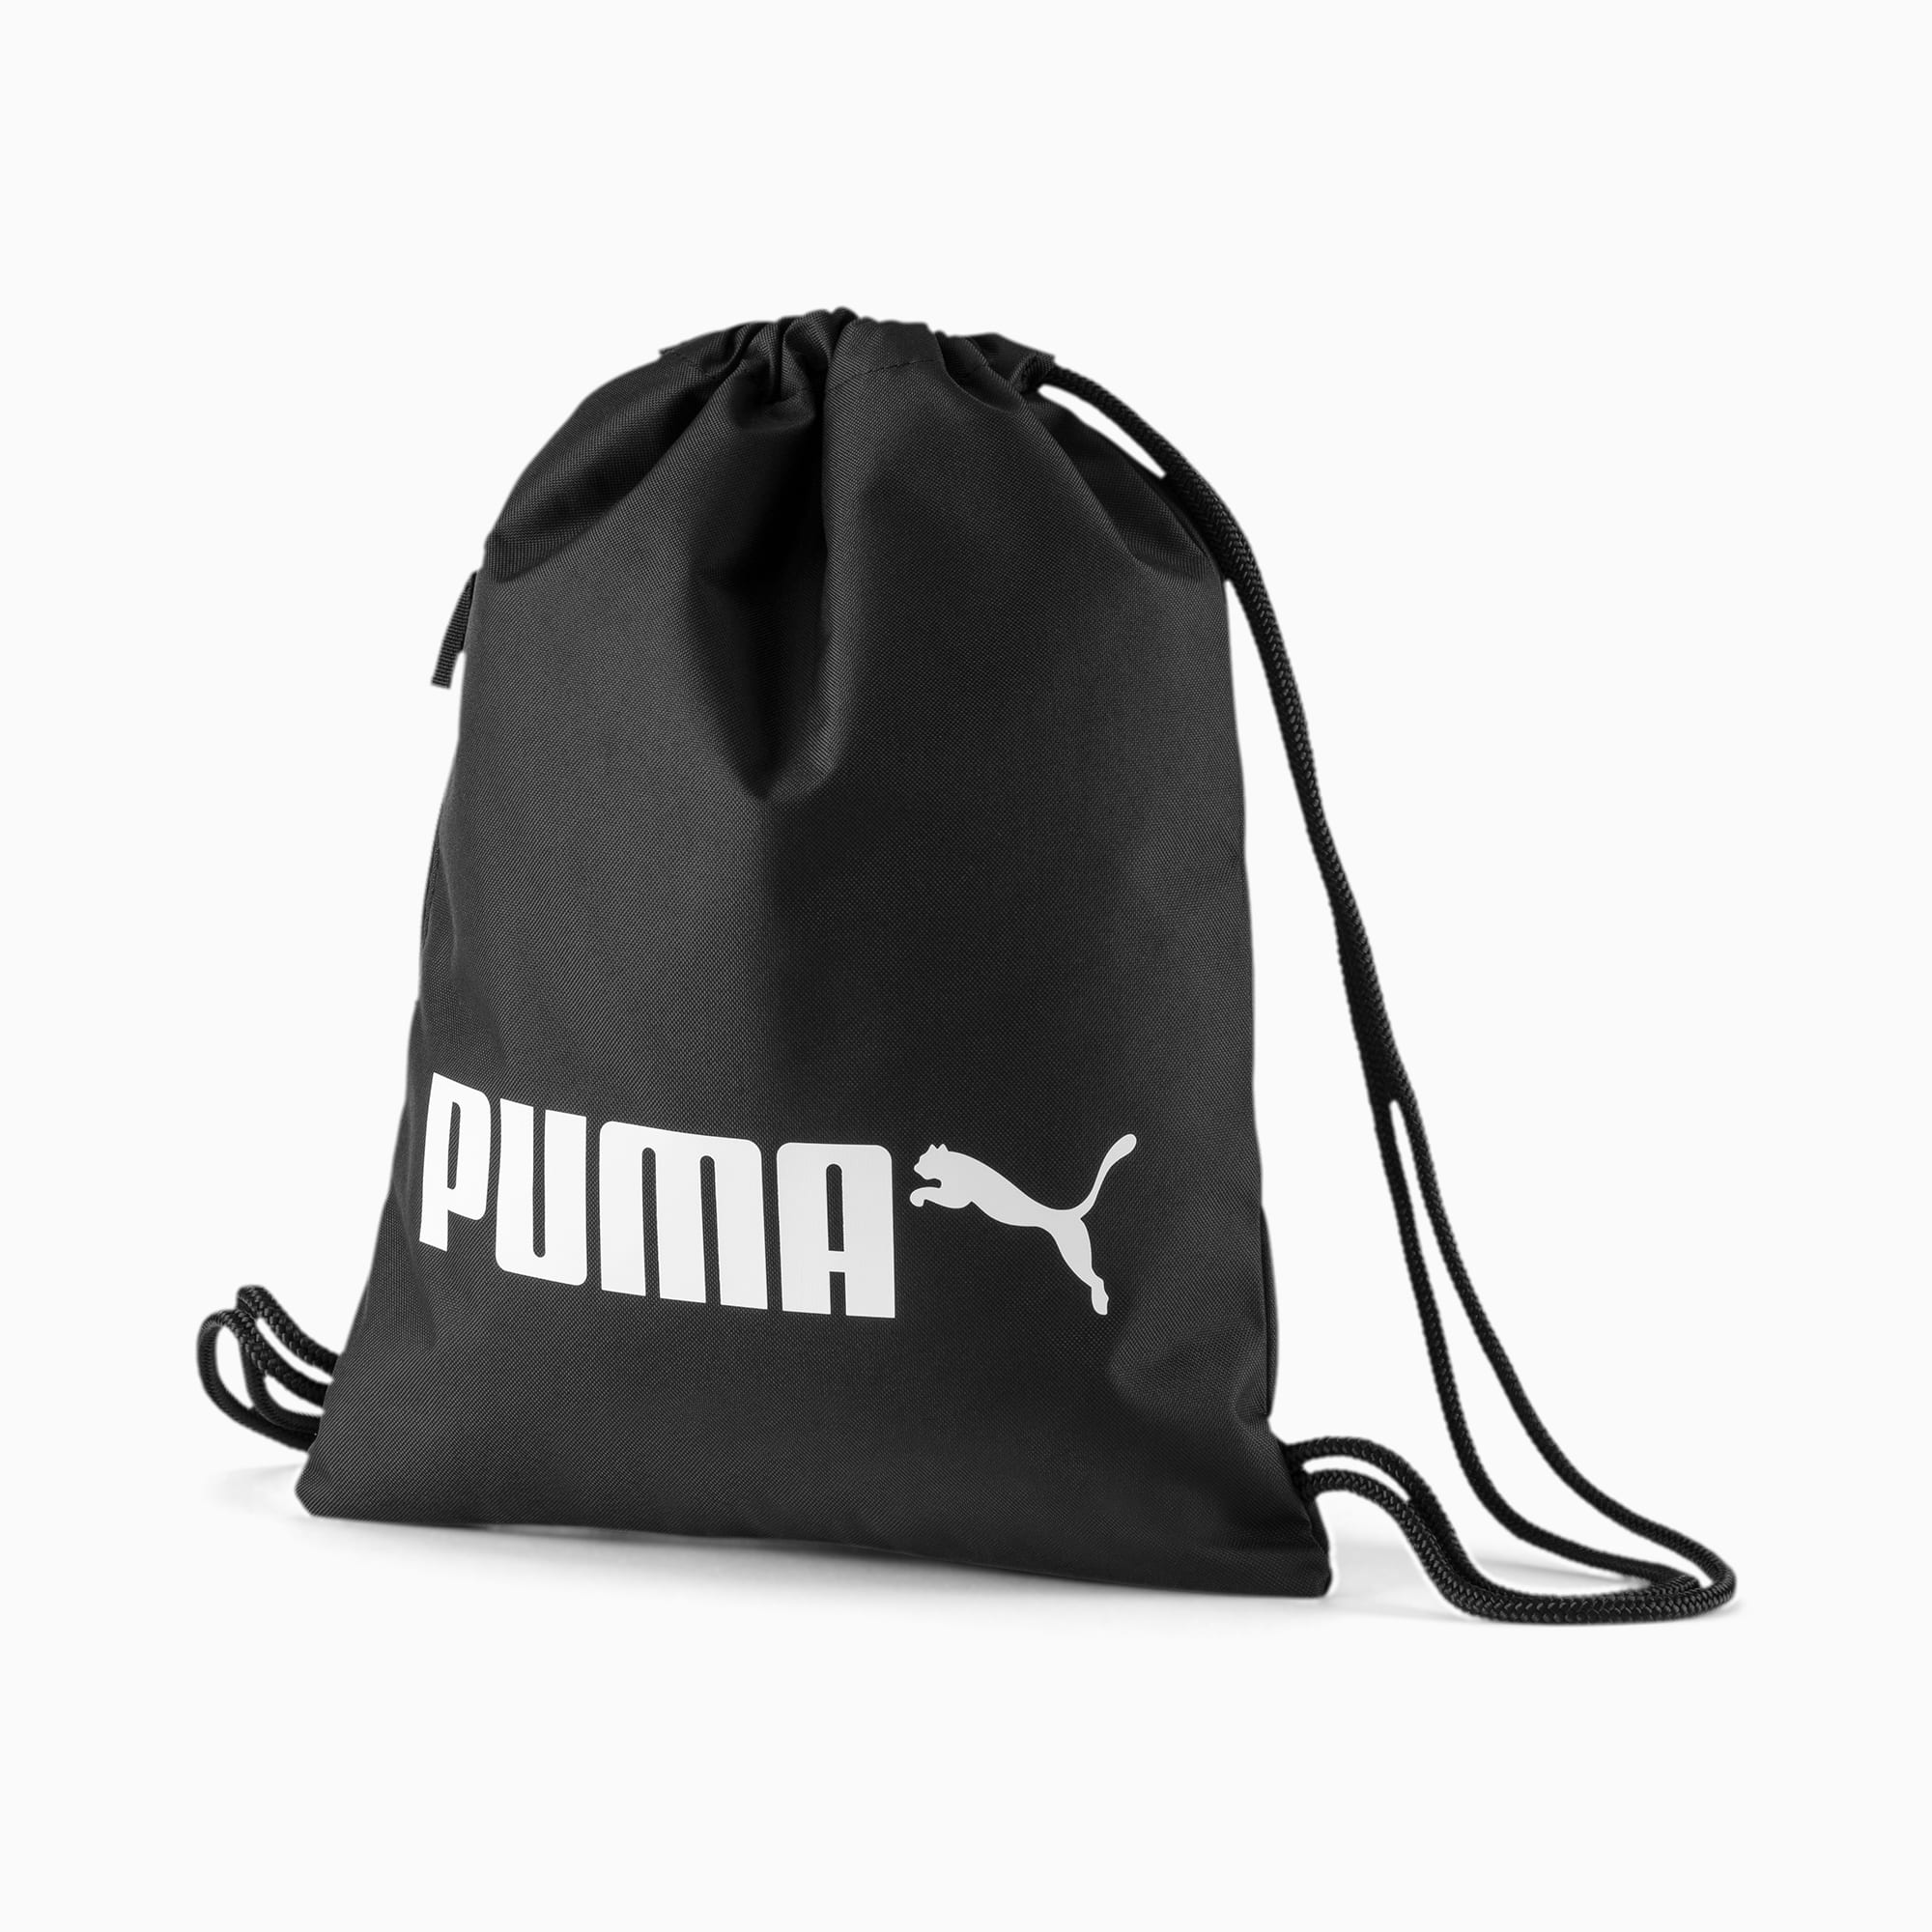 puma gym bags